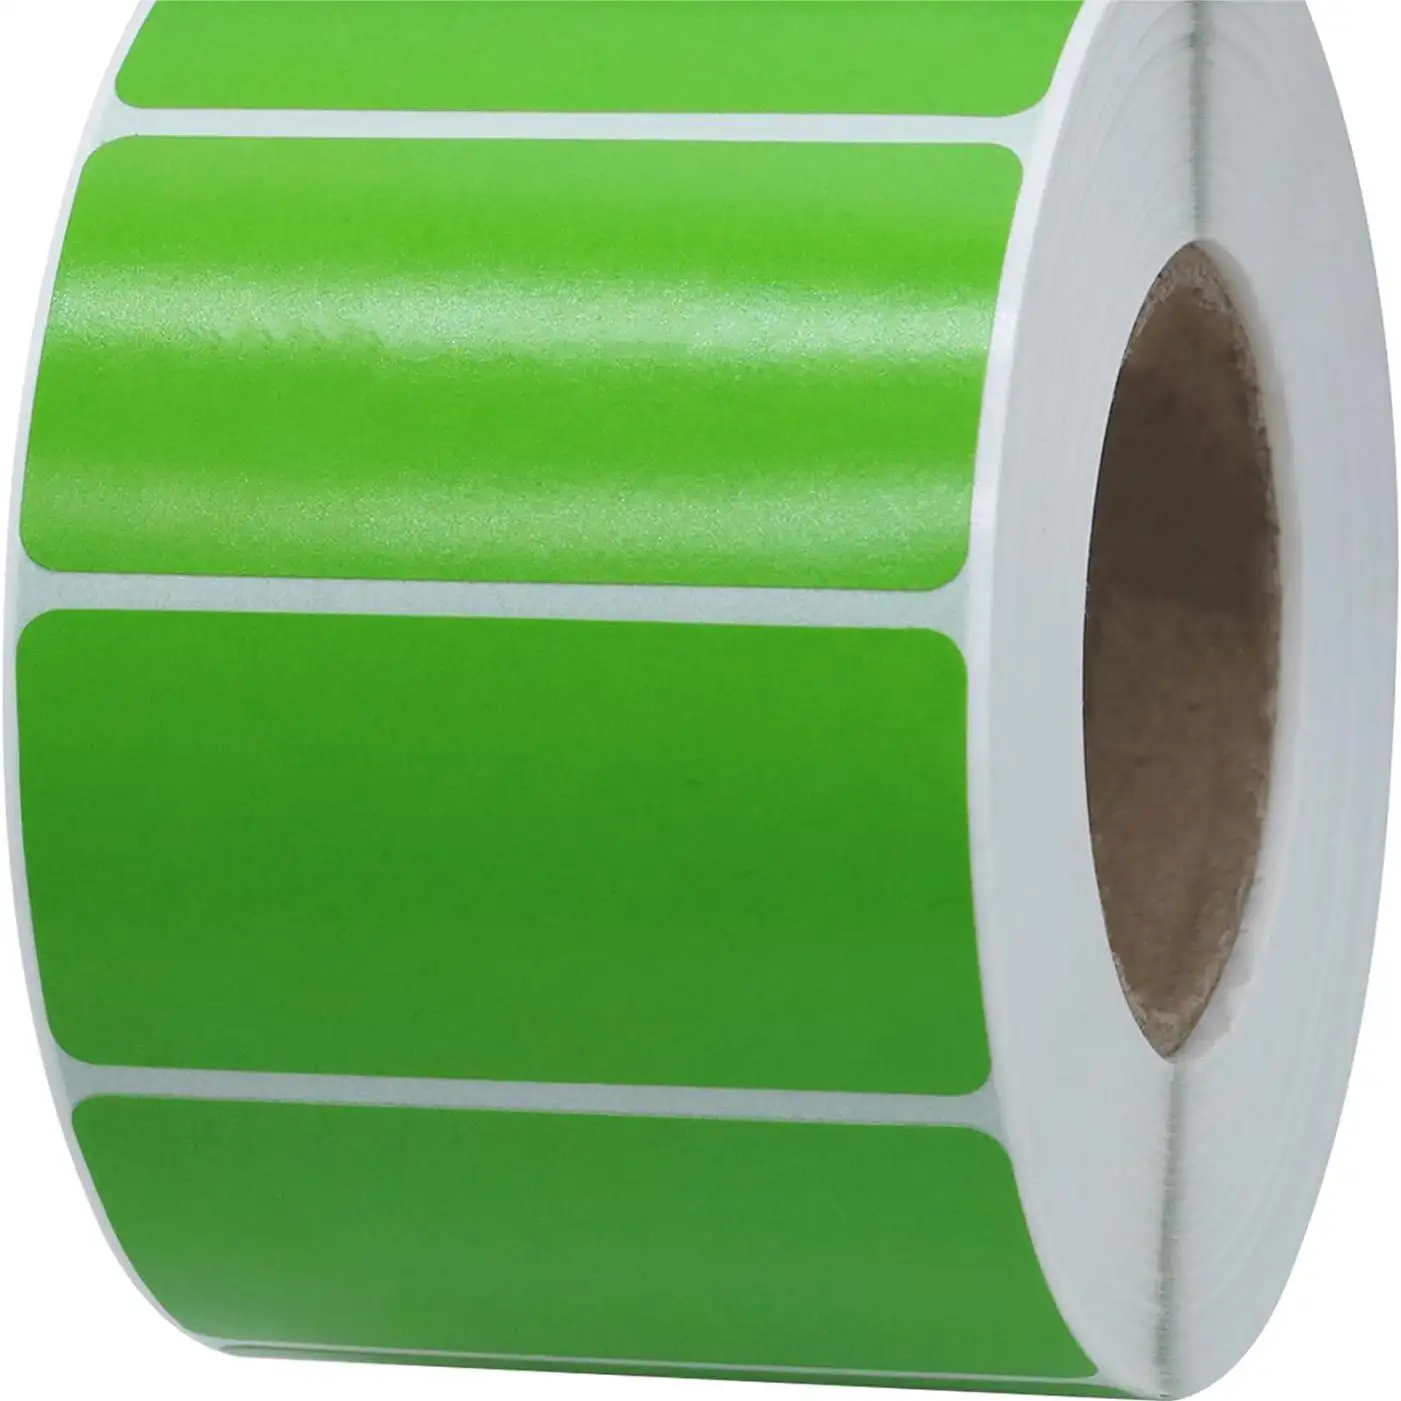 2.25 "x 1.25" verde riutilizzabile indirizzo termico diretto spedizione etichetta termica per stampante termica (1000 pezzi per rotolo)